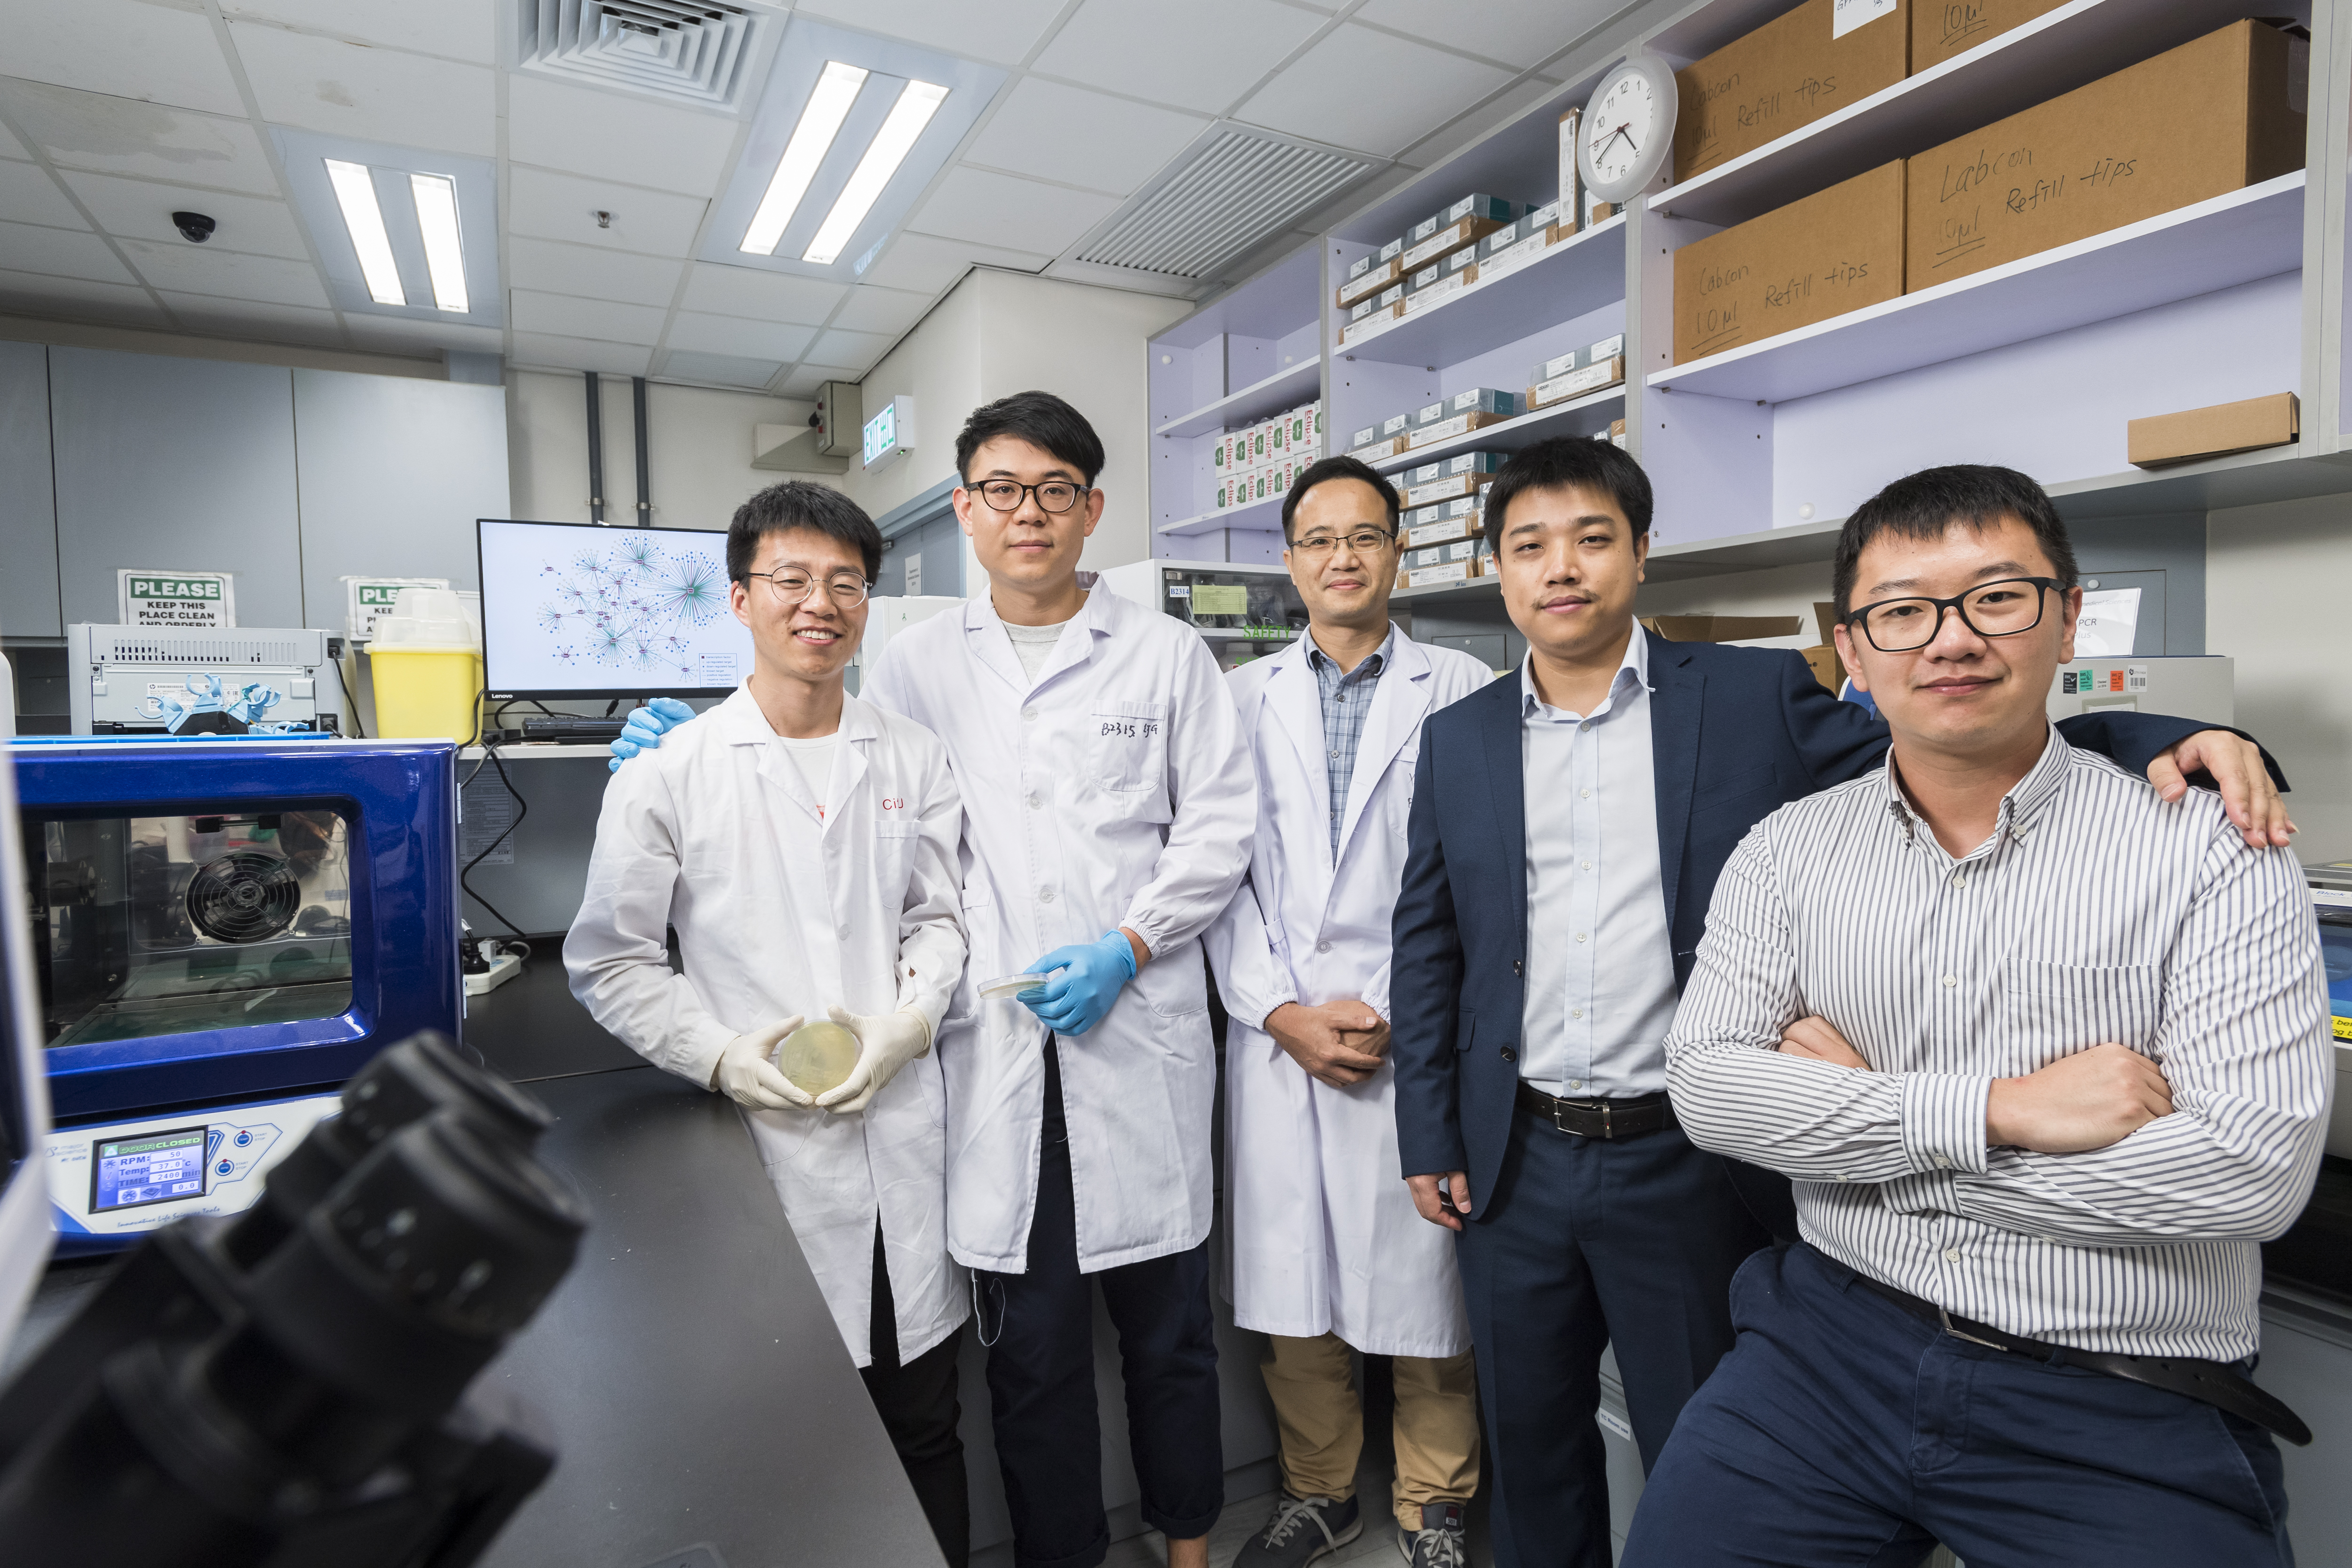 From left to right: Dr Shao Xiaolong, Xie Yingpeng, Dr Deng Xin, Dr Wang Xin and Huang Hao